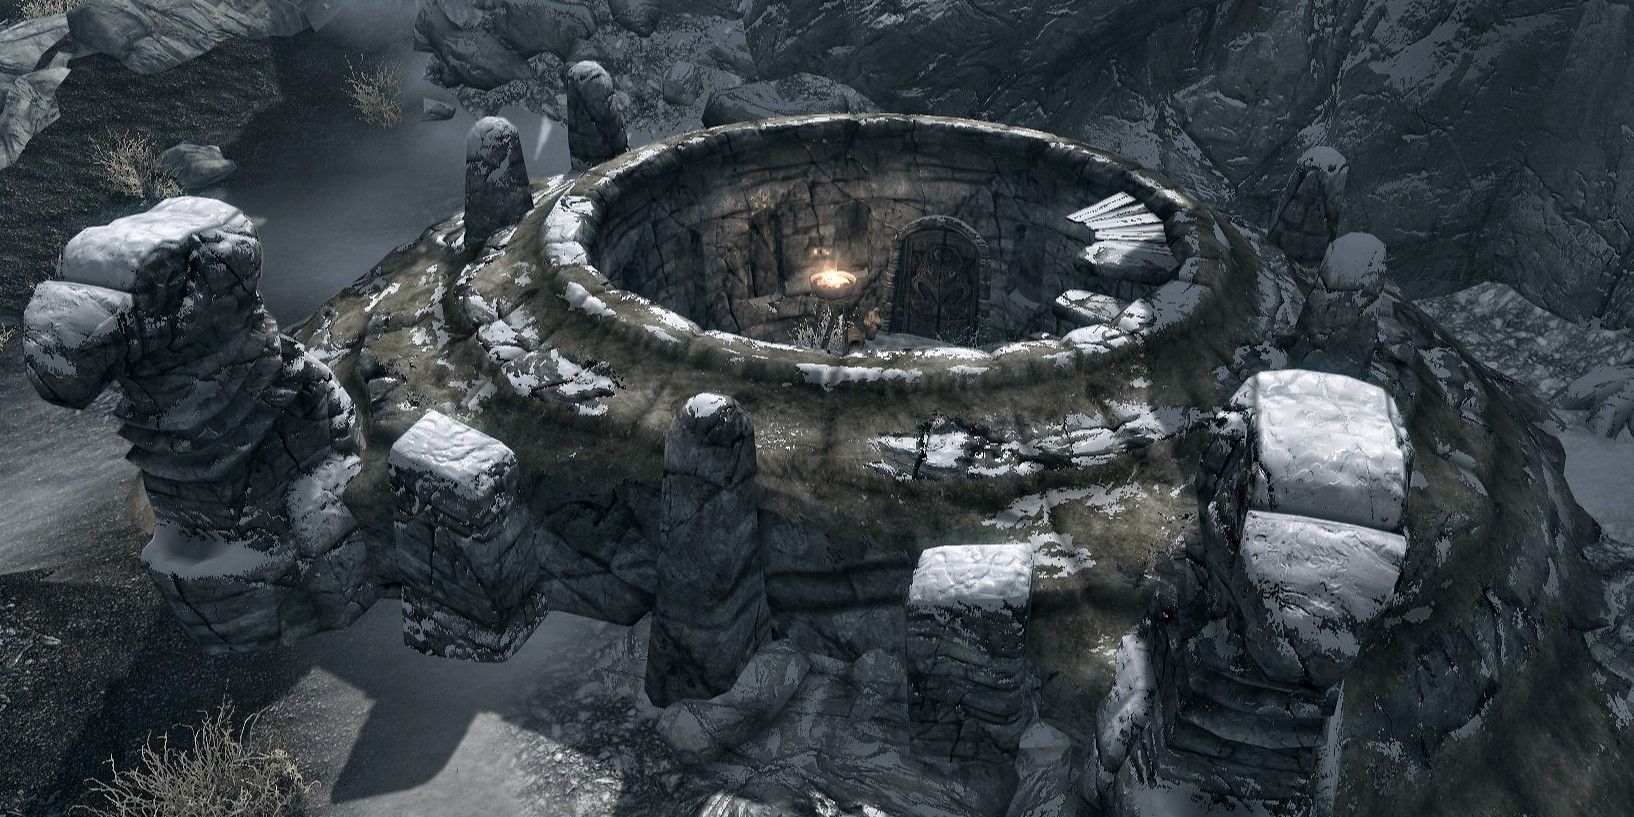 Ysgramor's Tomb in Skyrim